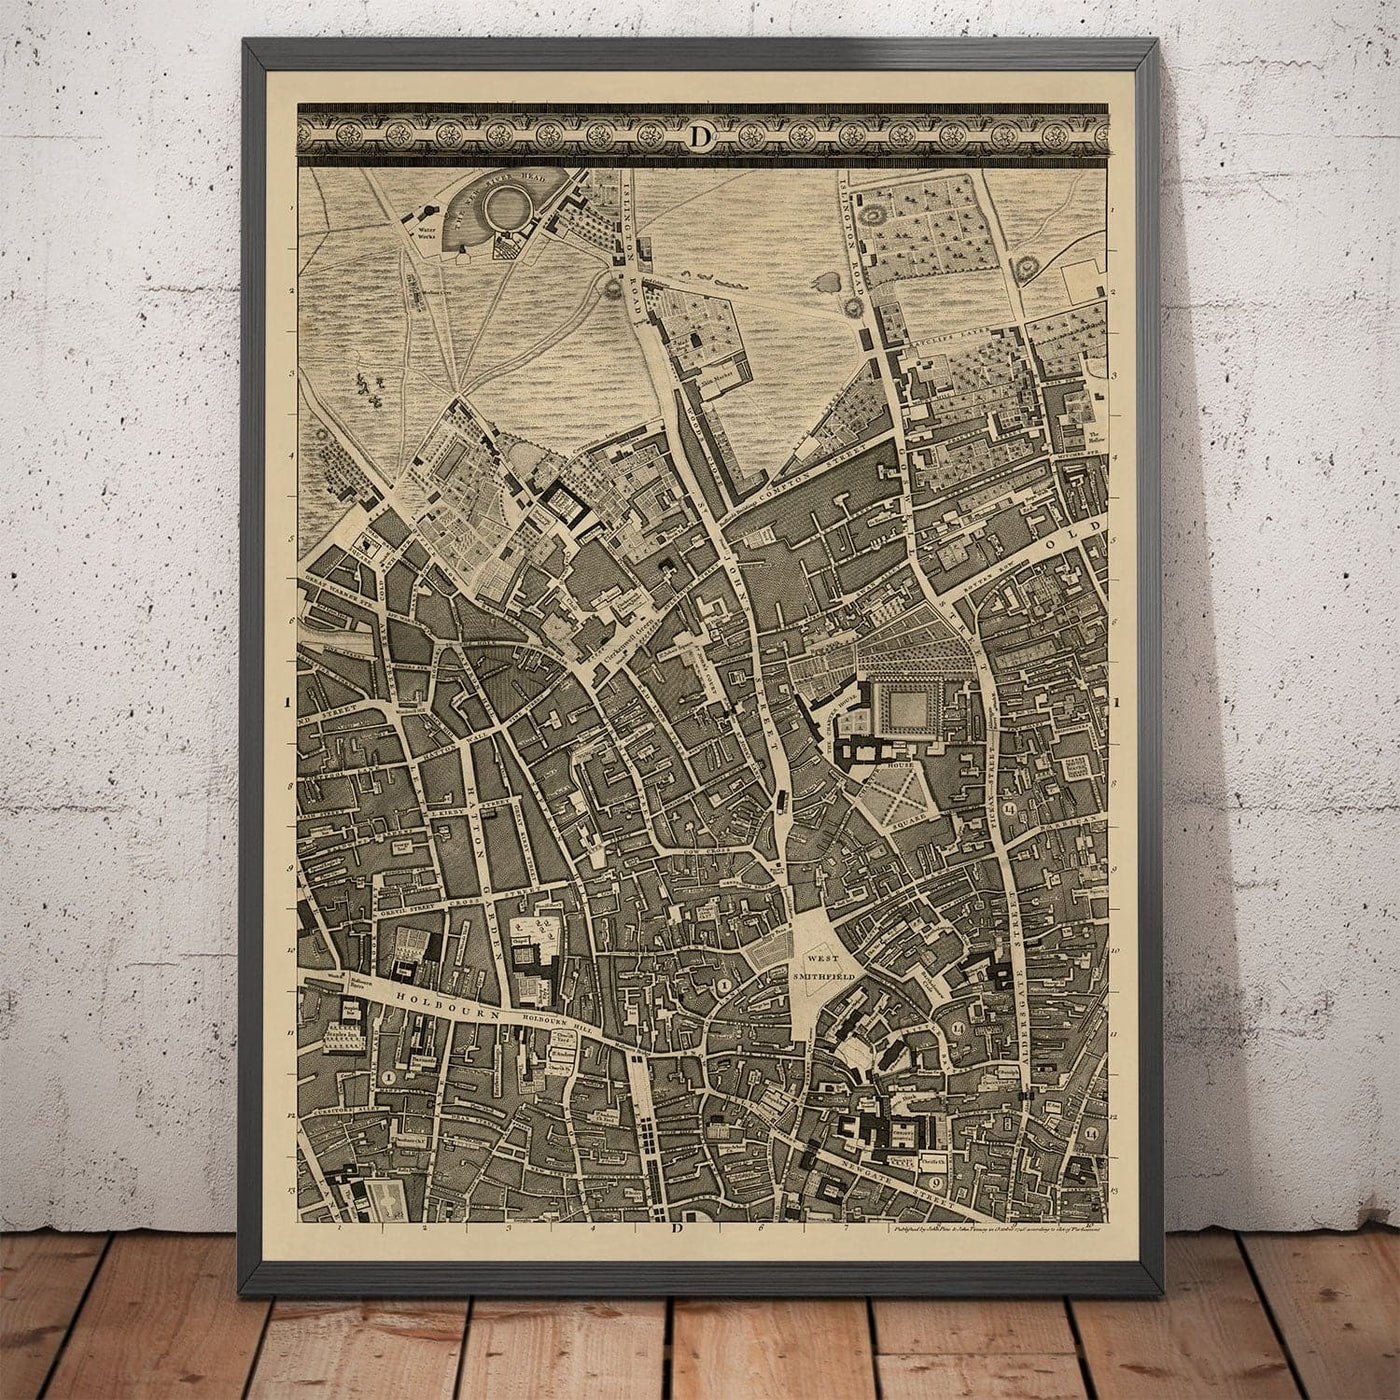 Alte Karte von London, 1746 von John Rocque, D1 - Holborn, Clerknwell, Farringdon, Barbican, Westminster, Stadt London, Smithfield Market